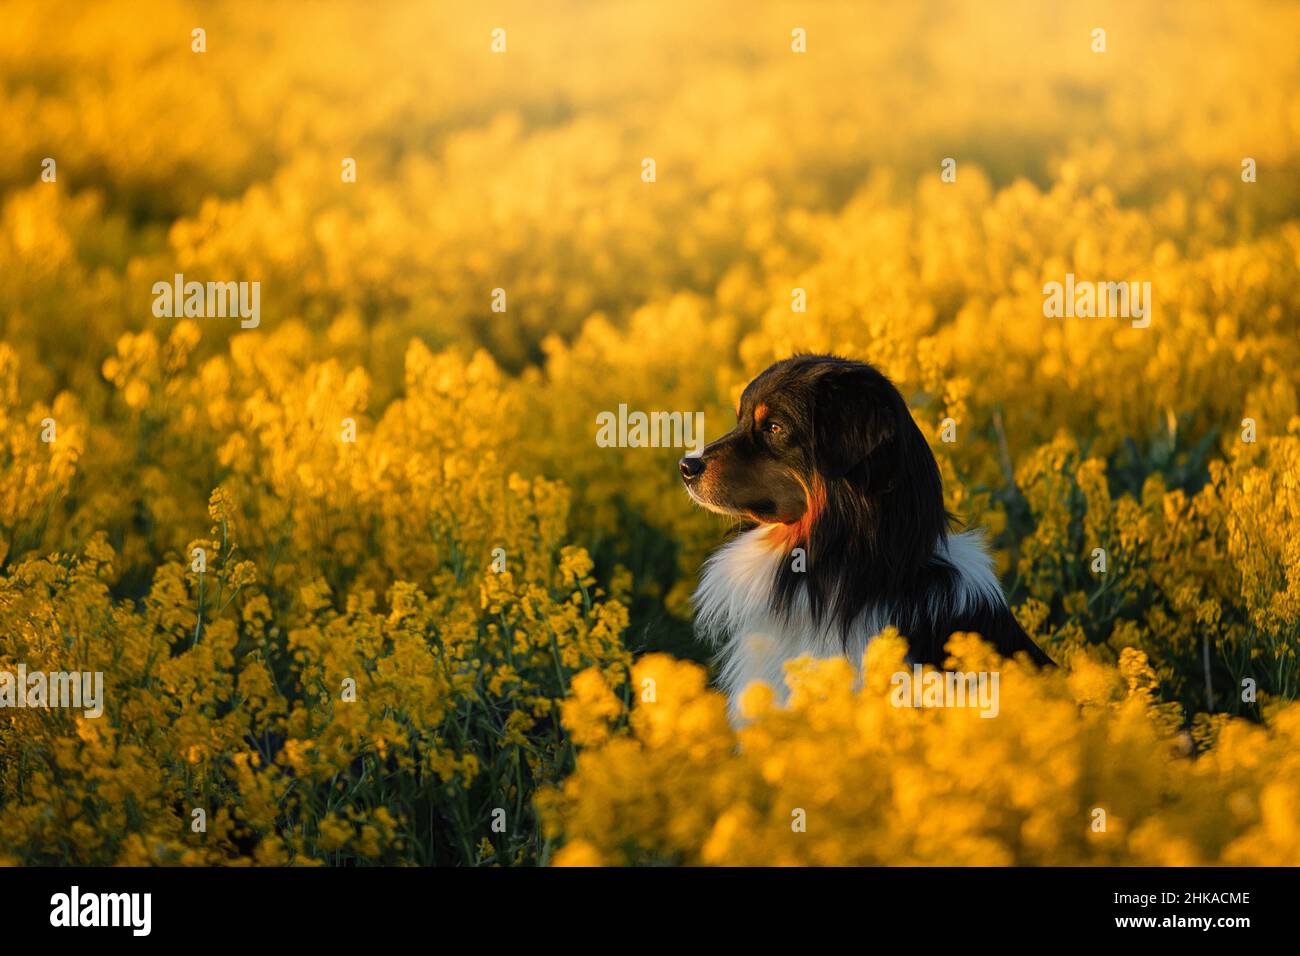 Ritratto di un bel pastore australiano in un campo di colza. Aussie su un prato giallo tramonto. Foto Stock